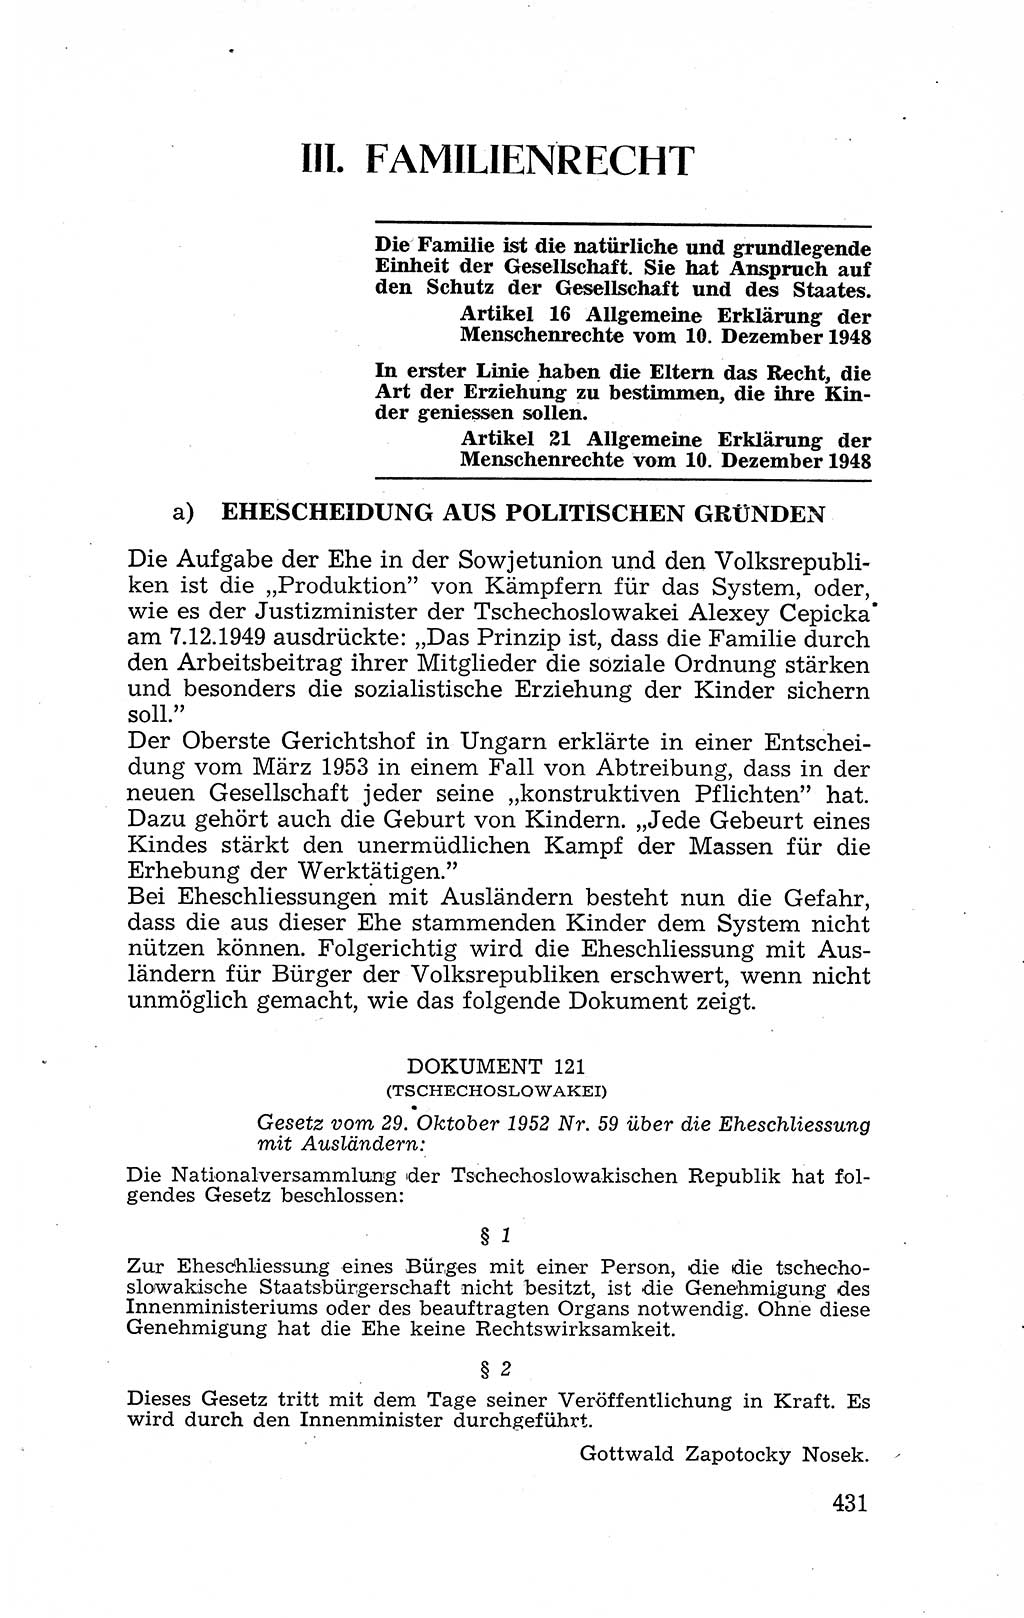 Recht in Fesseln, Dokumente, Internationale Juristen-Kommission [Bundesrepublik Deutschland (BRD)] 1955, Seite 431 (R. Dok. IJK BRD 1955, S. 431)